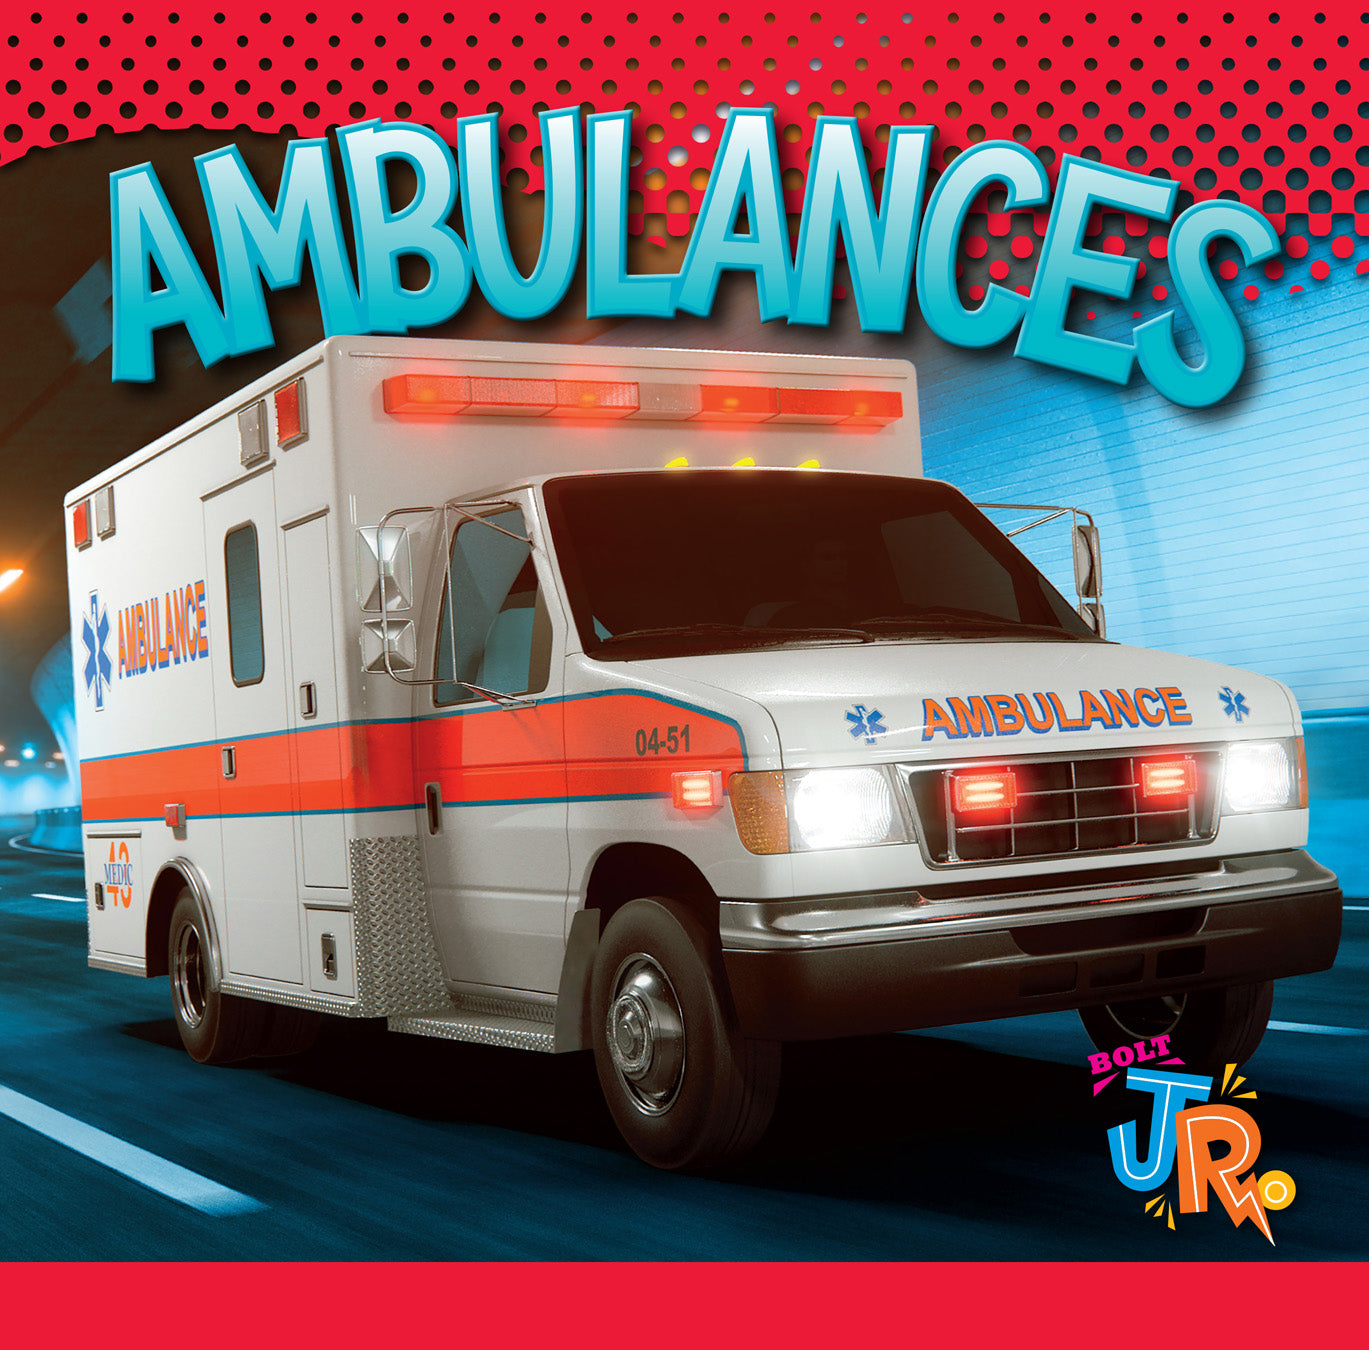 Emergency Vehicles: Ambulances